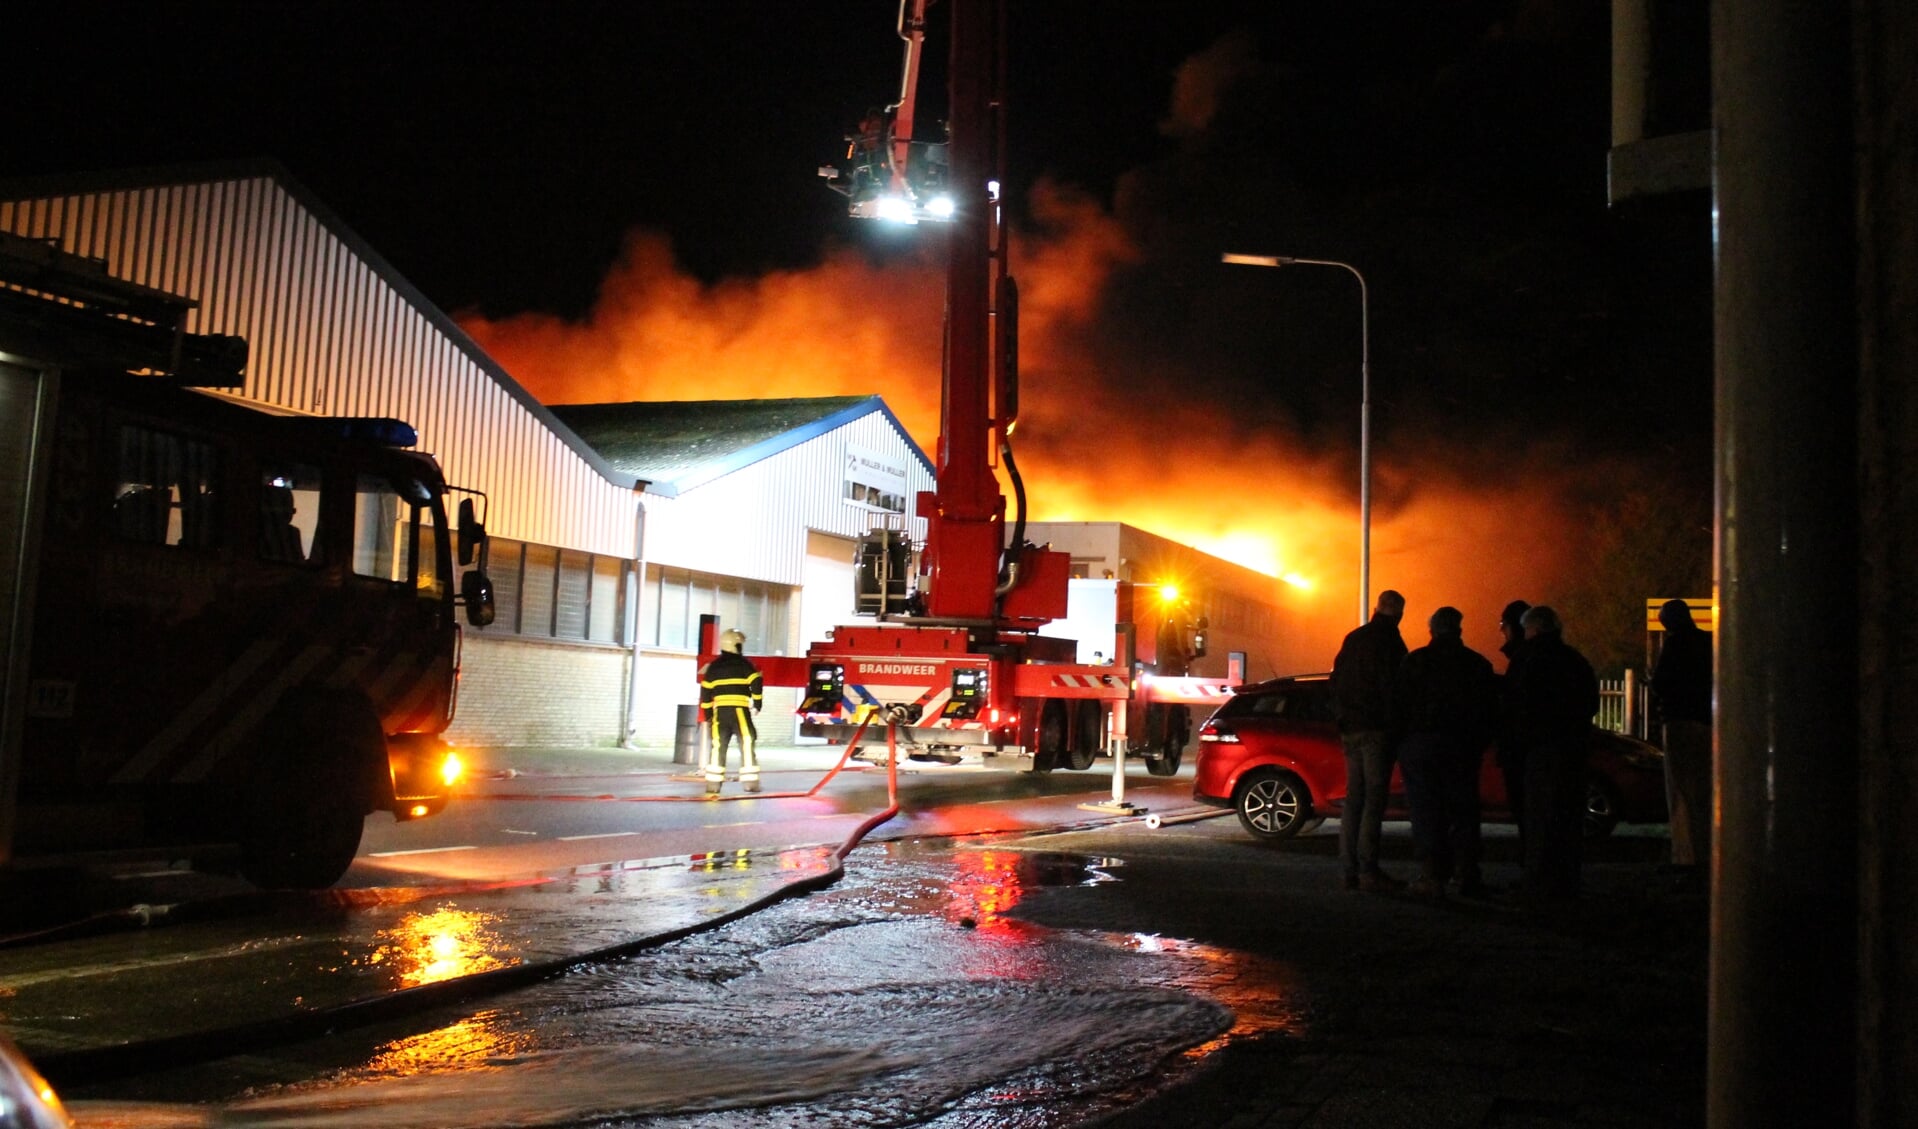 Calamiteiten, zoals ene grote uitslaande brand, worden voortaan ook op de website van de gemeente weergegeven.